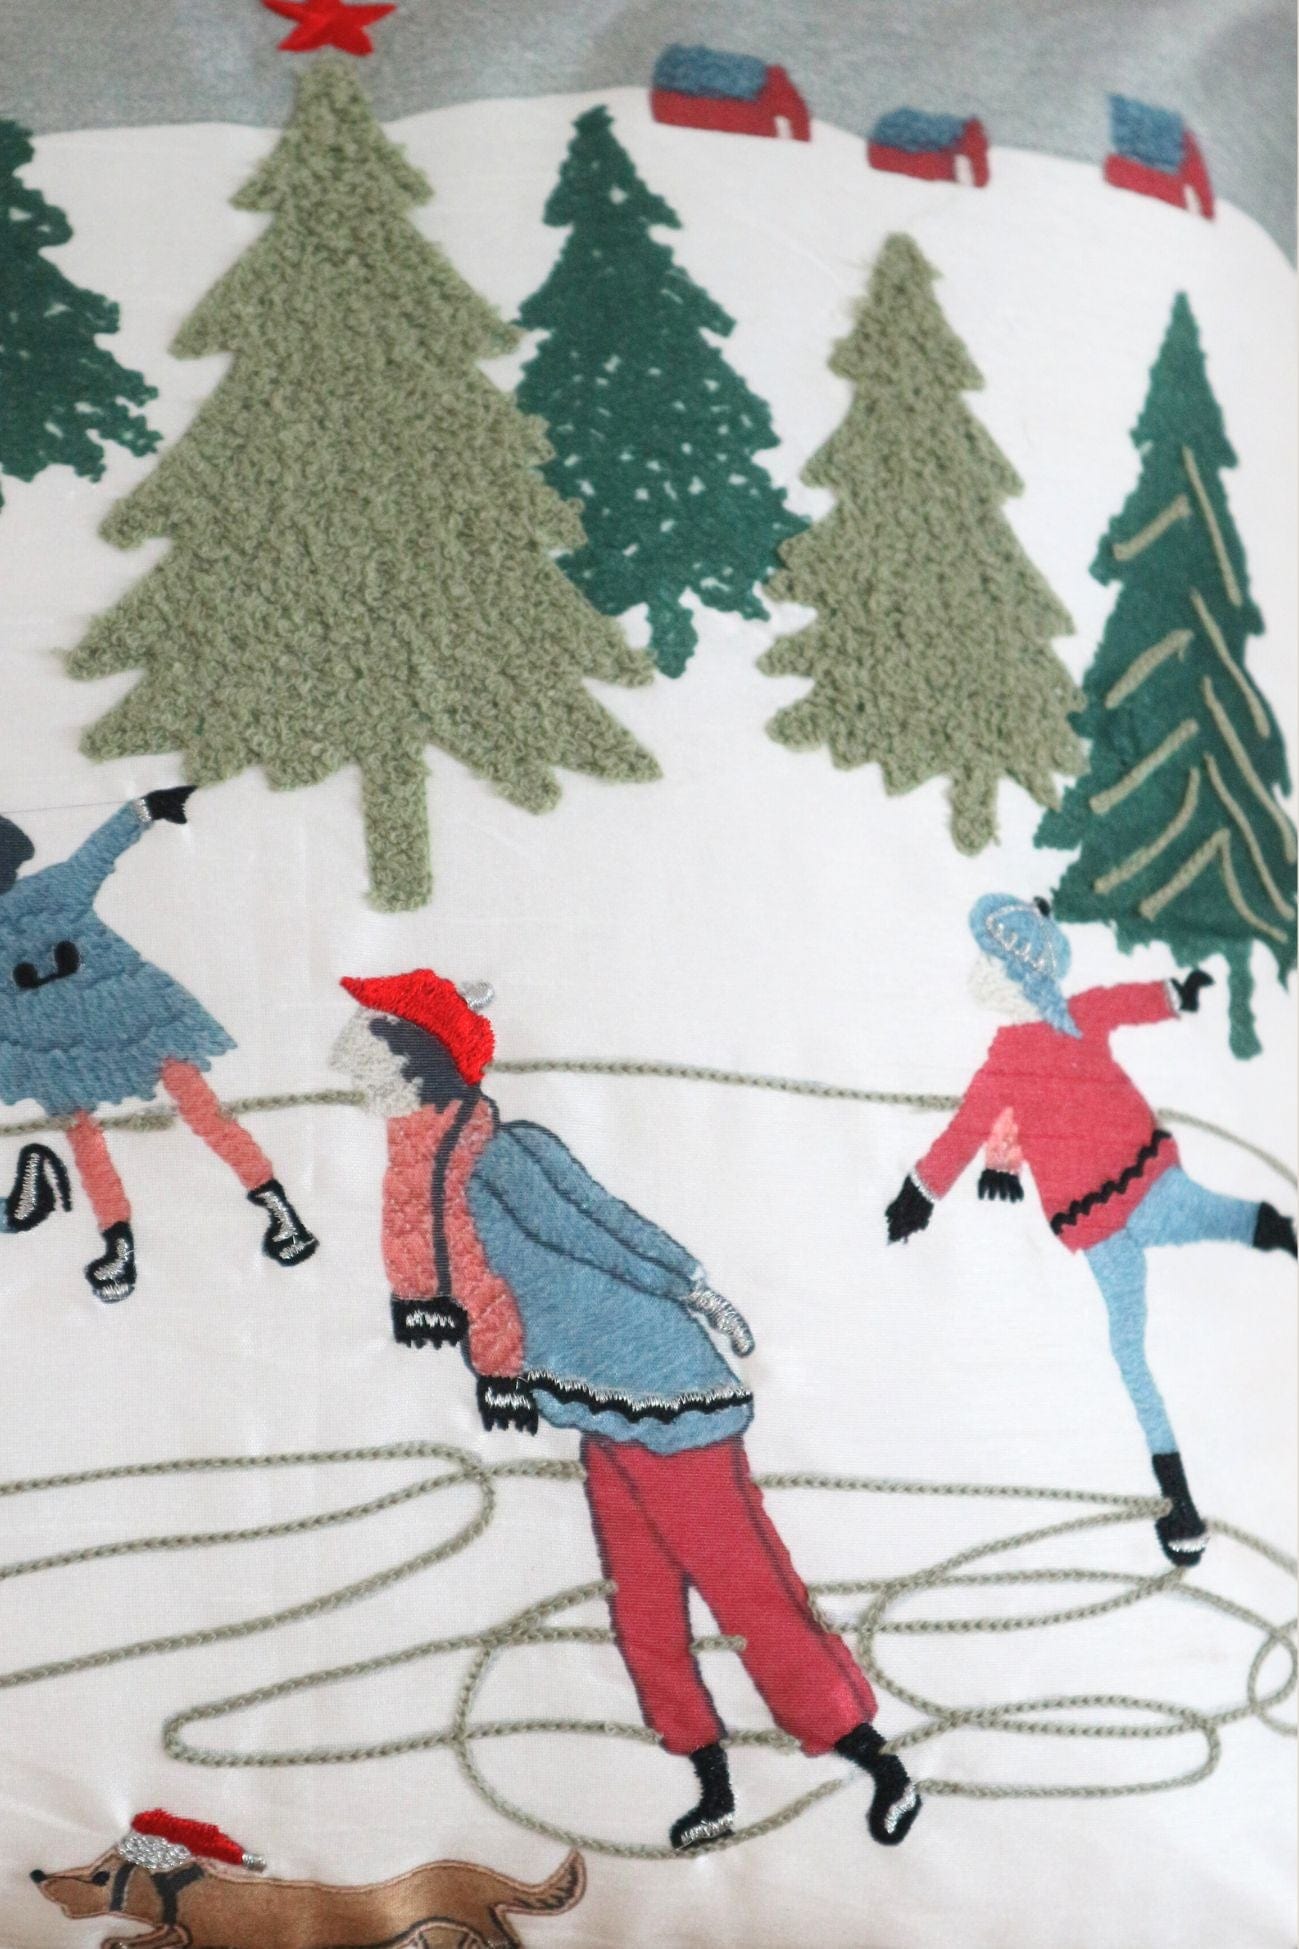 Blanc MariClo' Skier Skier - Cuscino di Natale con pompon e sciatori | Blanc MariClo'